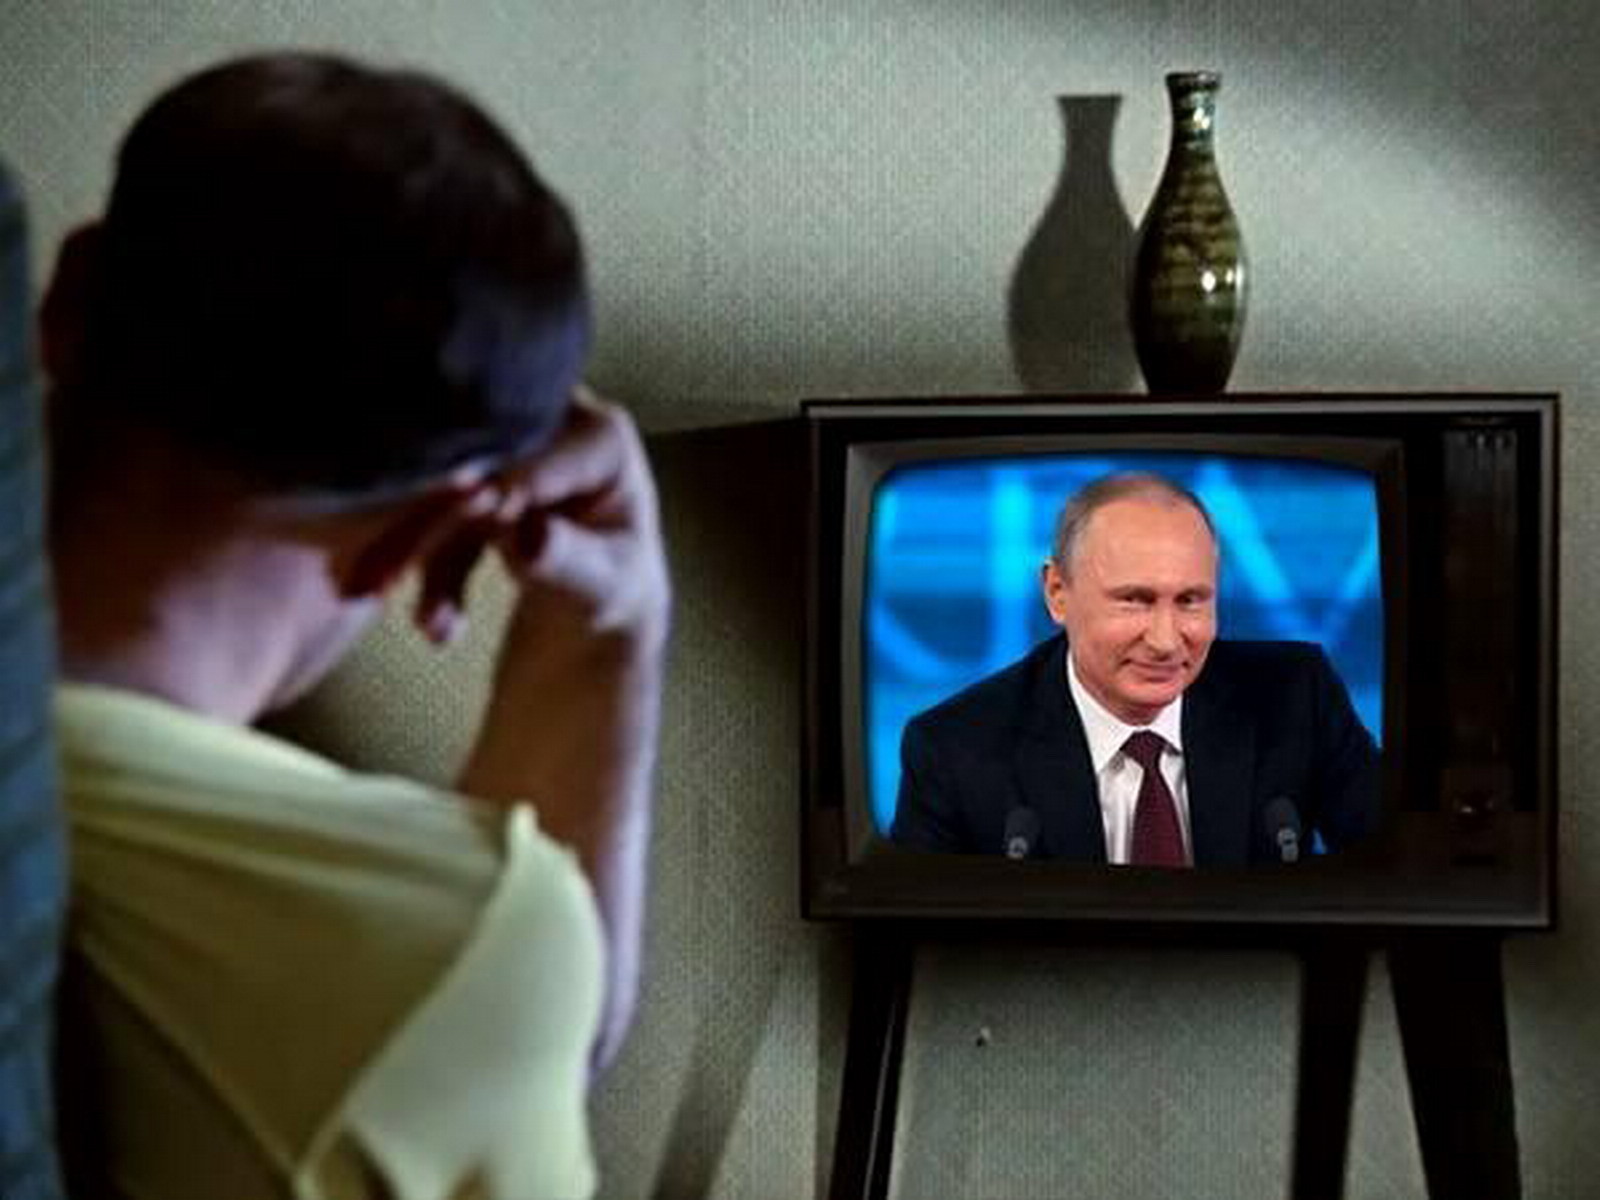 Сегодня по телевизору есть какие. Человек телевизор. Стырйтелефизор с Путиным. Телевидение политика.